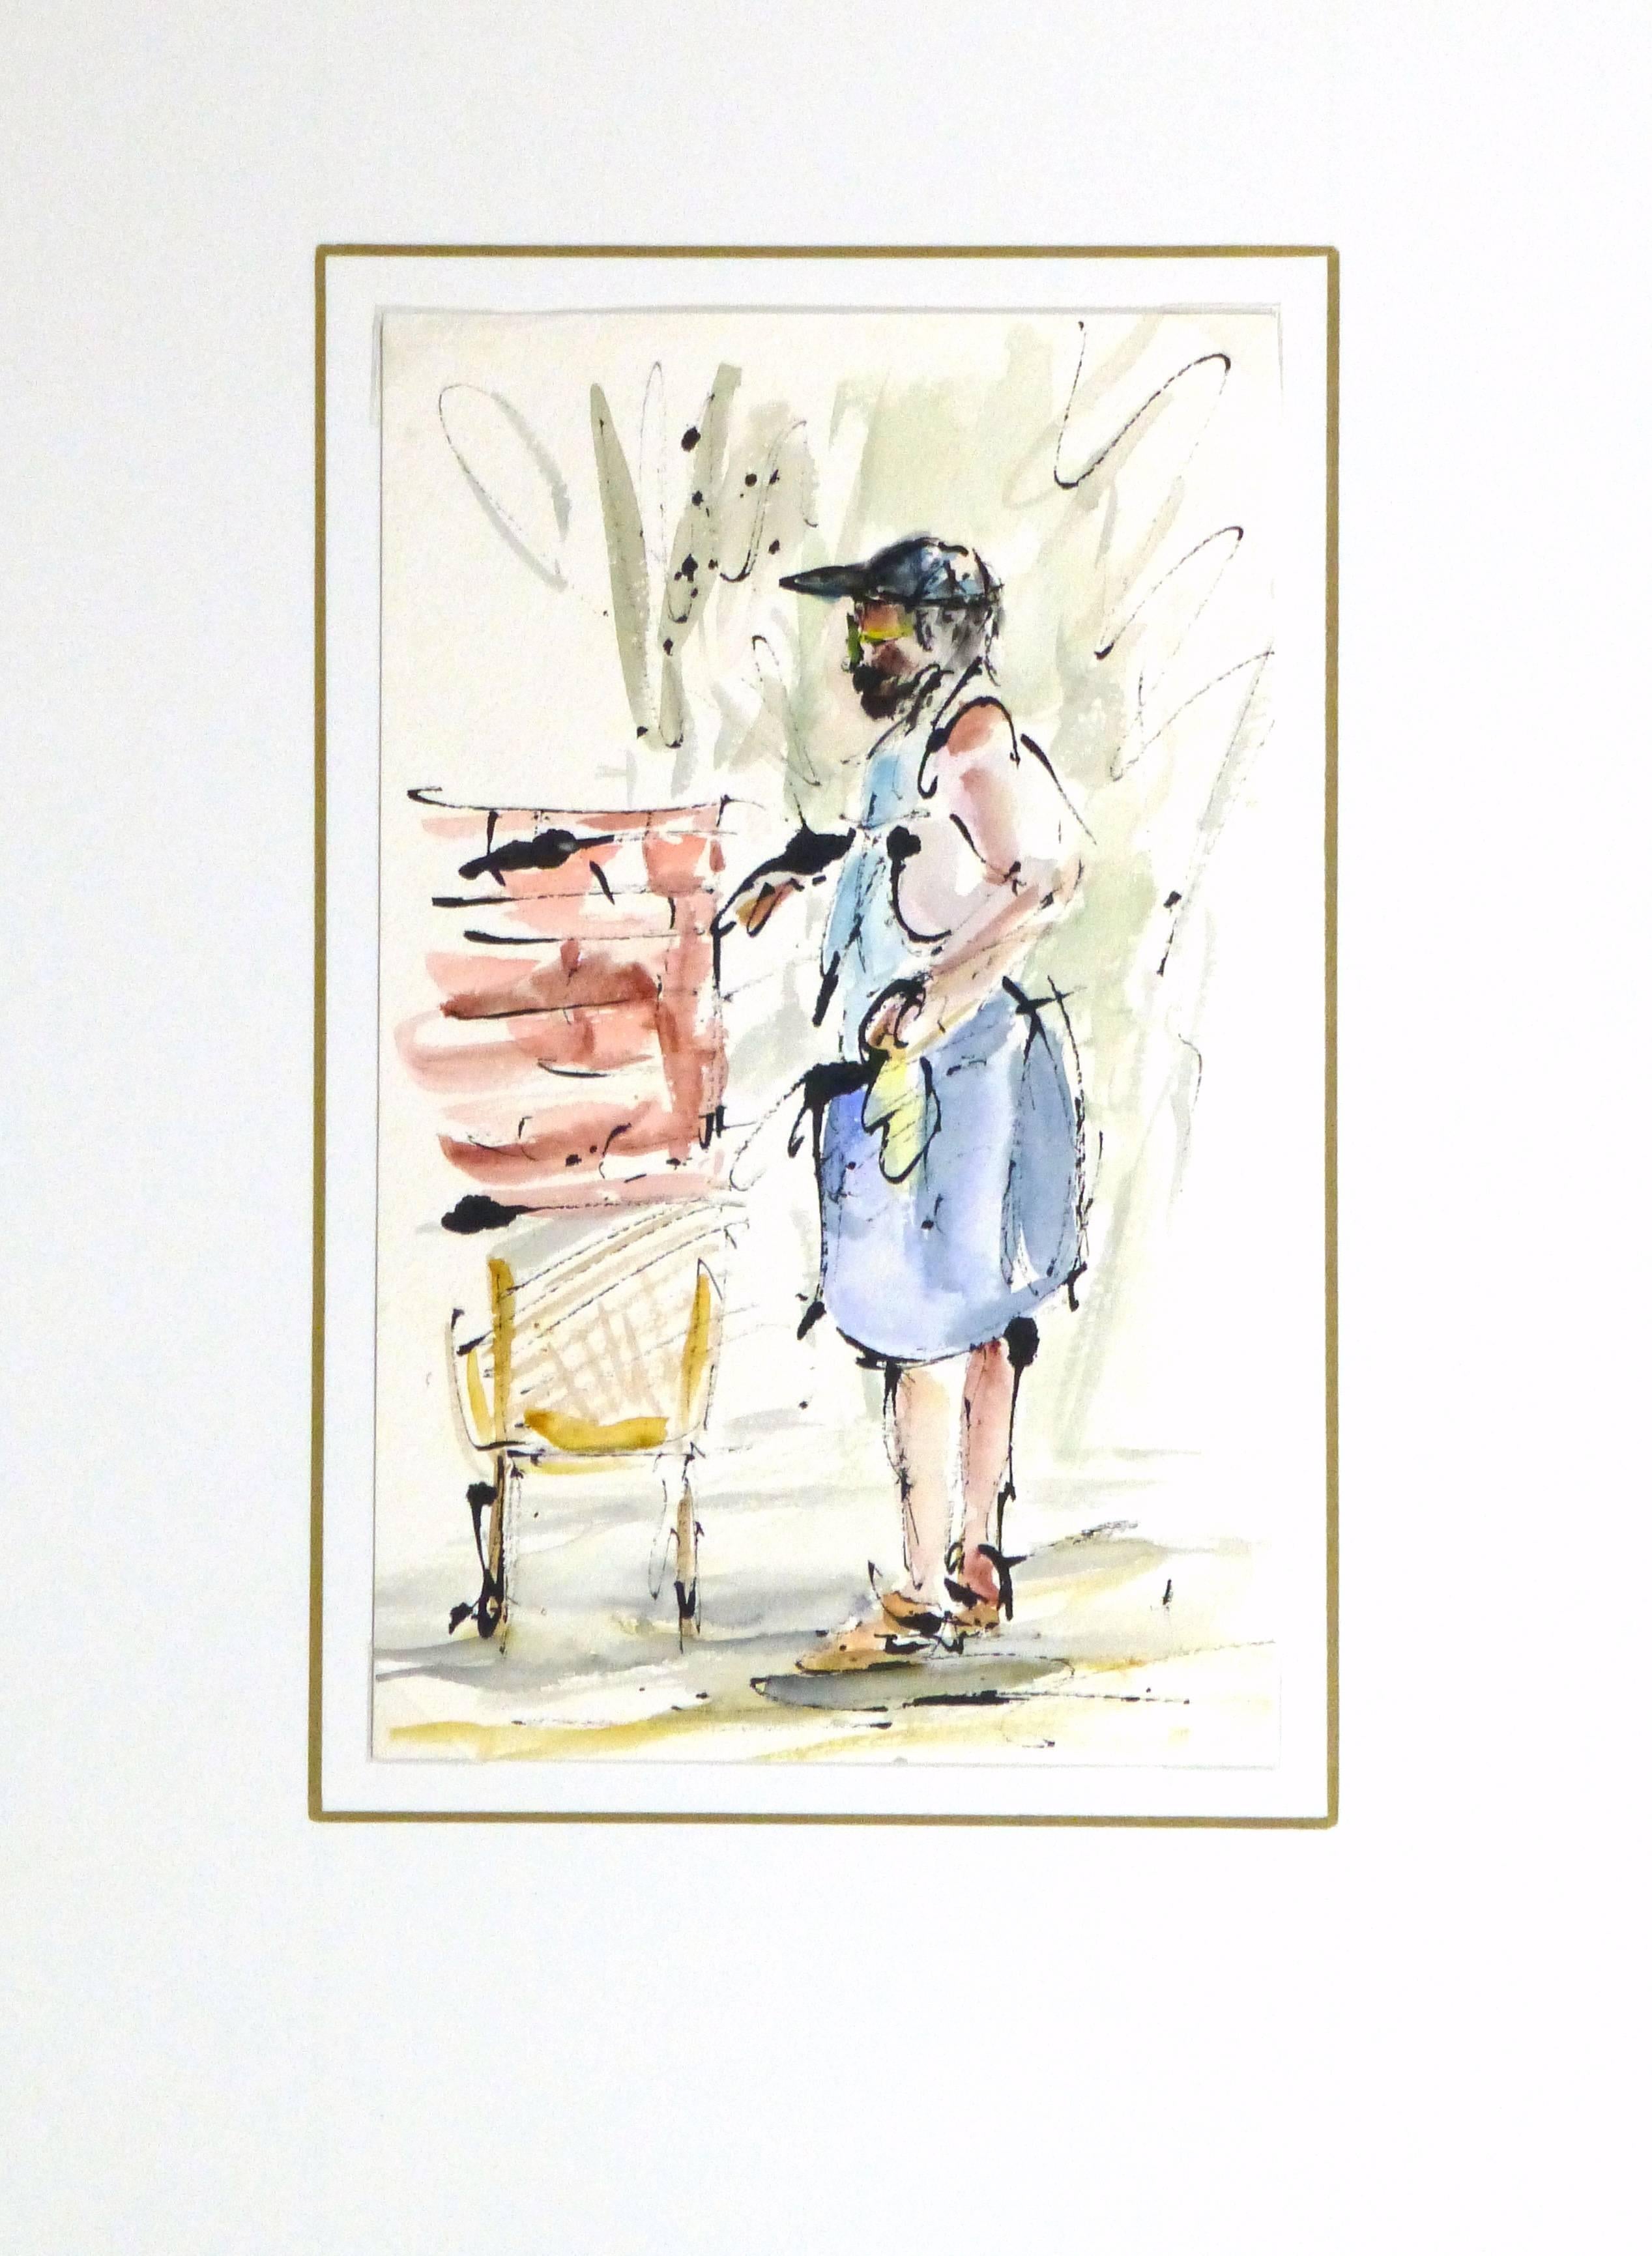 Fröhliche Aquarell- und Tuschemalerei einer Person, die sich um ihre Gartenarbeit kümmert, 1990er Jahre. 

Originalkunstwerk auf Papier auf einem weißen Passepartout mit Goldrand. Inklusive Plastikhülle und Echtheitszertifikat für die